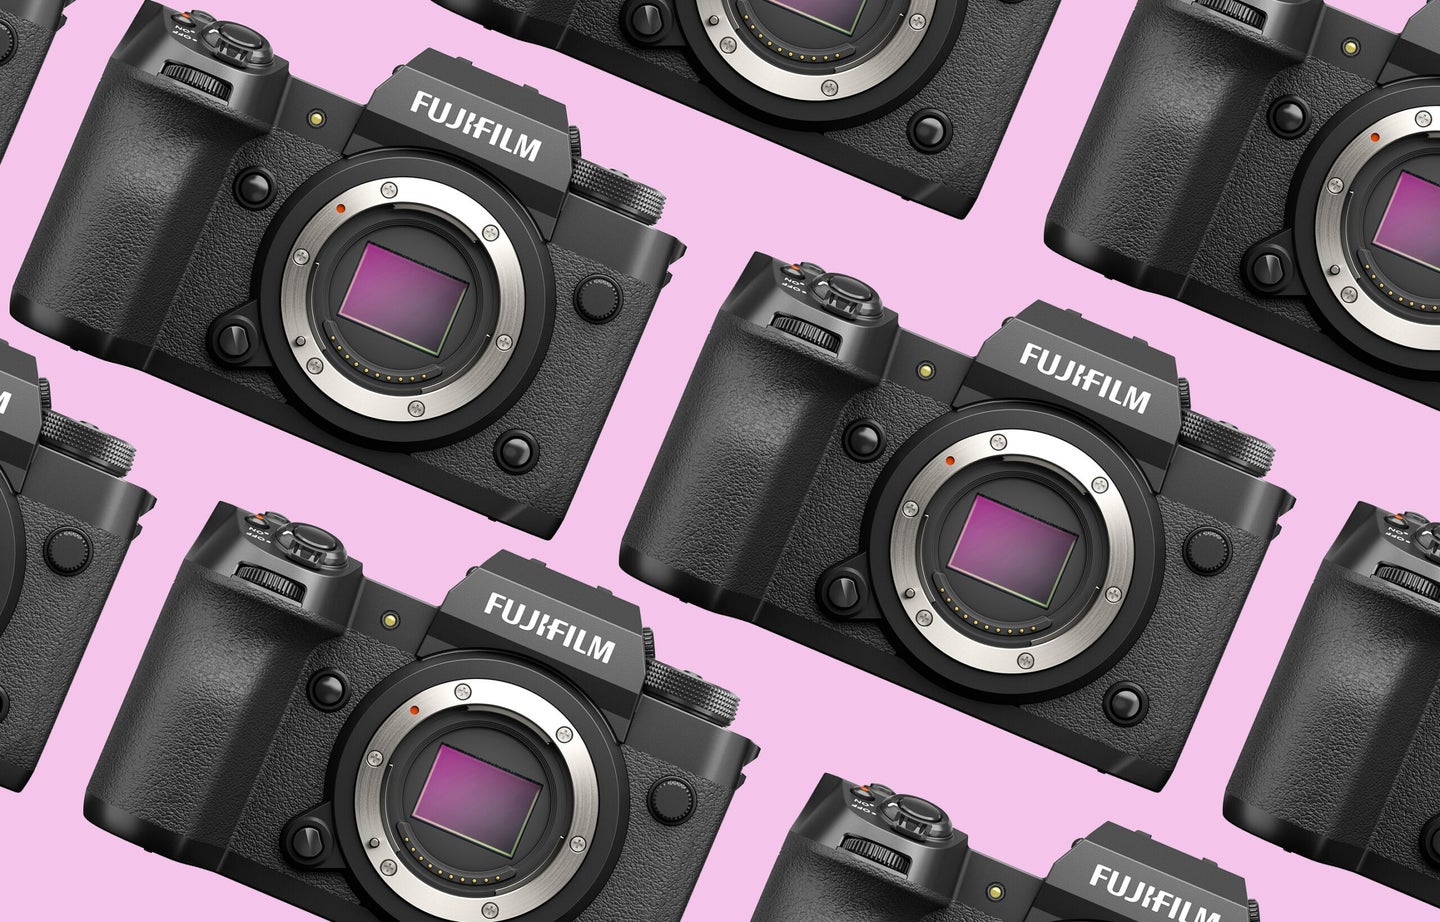 The new Fujifilm X-H2